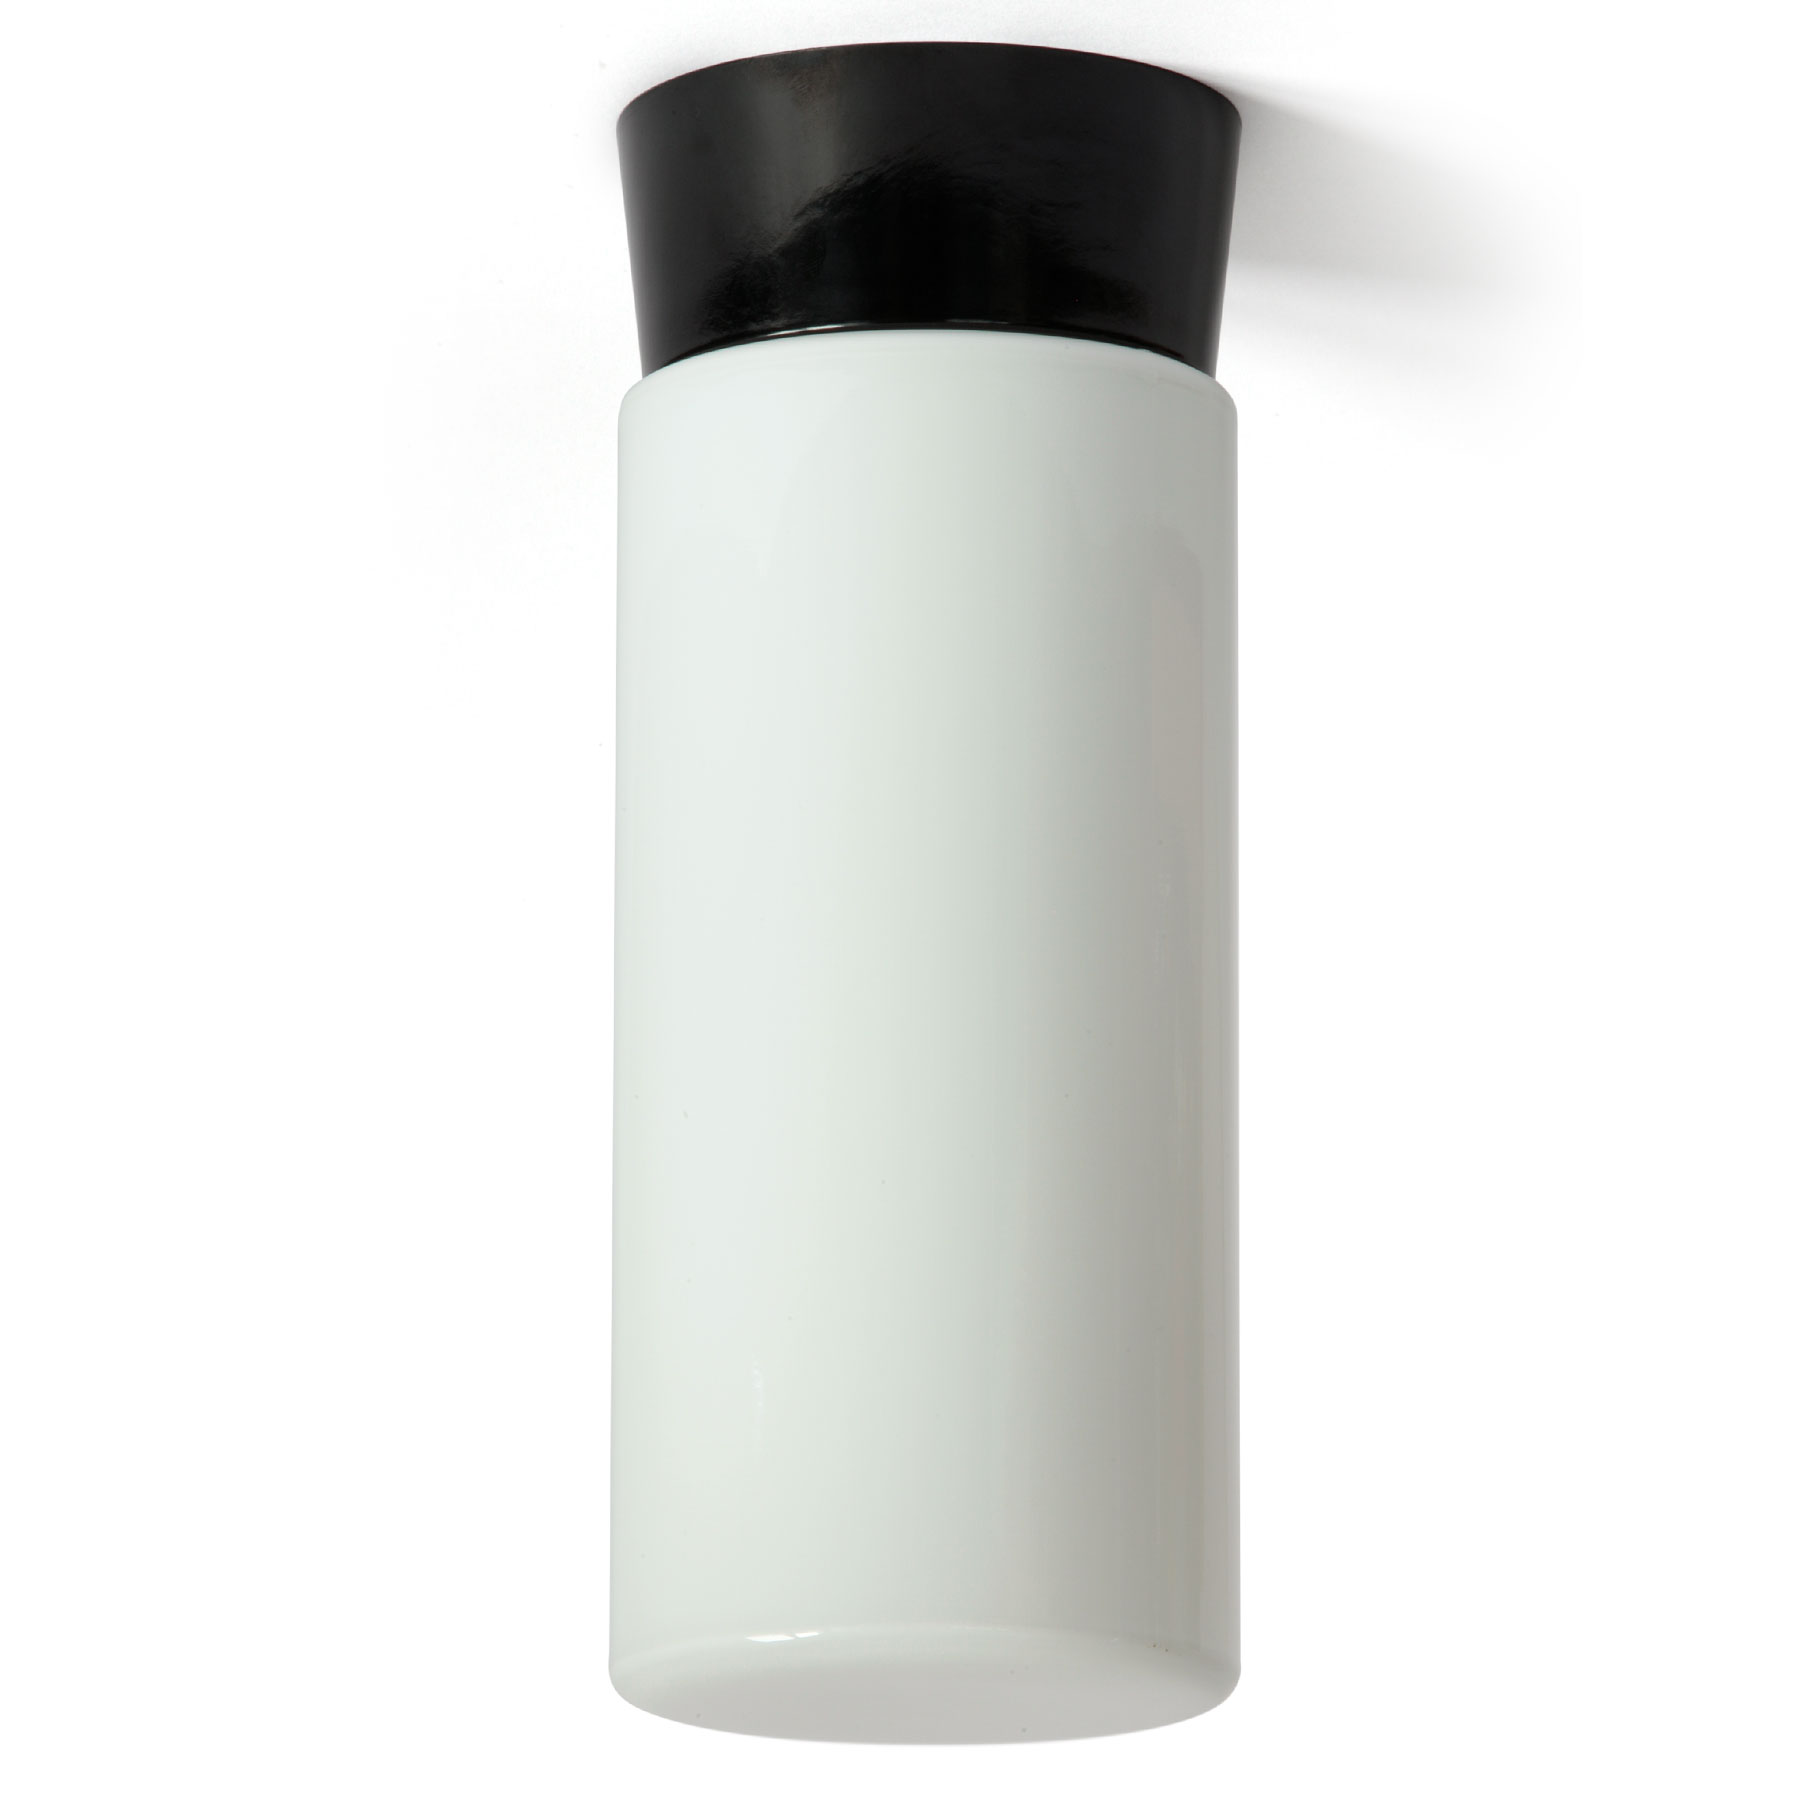 Zylinder-Deckenleuchte aus Opalglas mit Bakelit-Sockel: Ein langer, gerader Opalglas-Zylinder dient als Schirm für diese puristische Bakelit-Deckenleuchte (Höhe 28 cm)